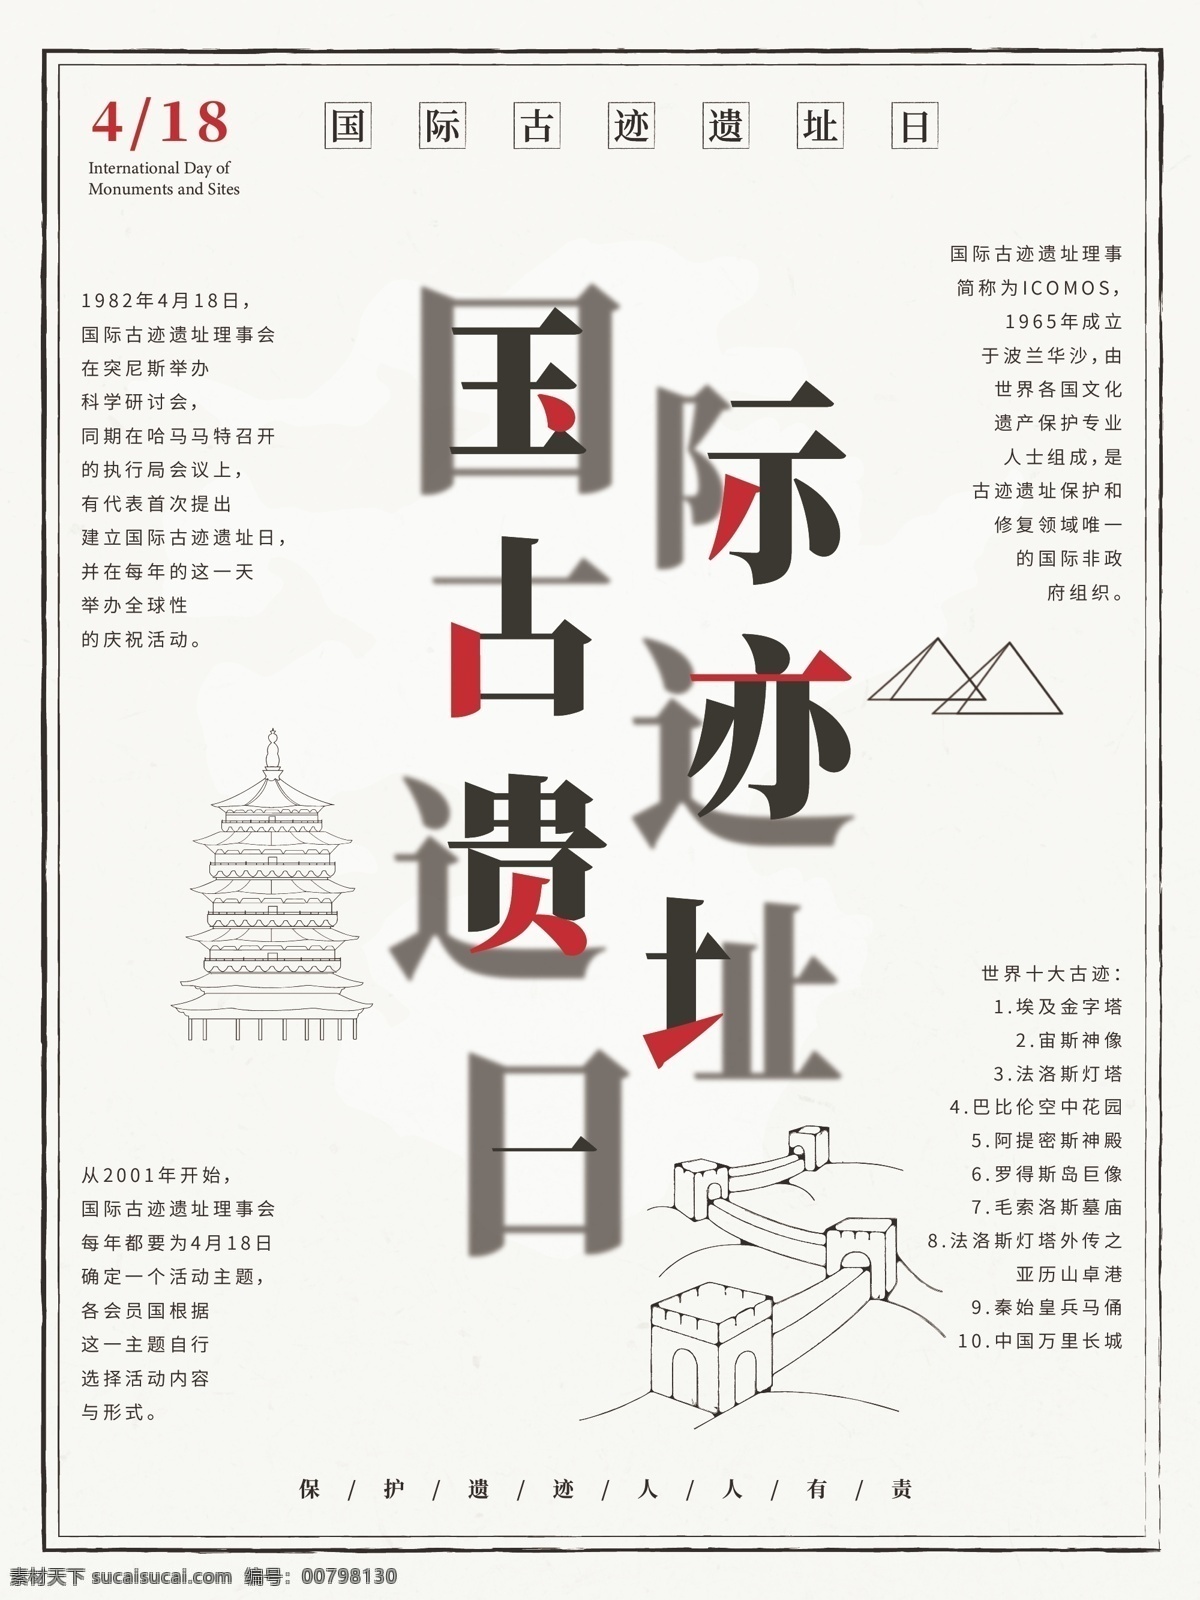 原创 国际 古迹 遗址 日 节日 海报 遗址日 中国风 传统 古遗迹日